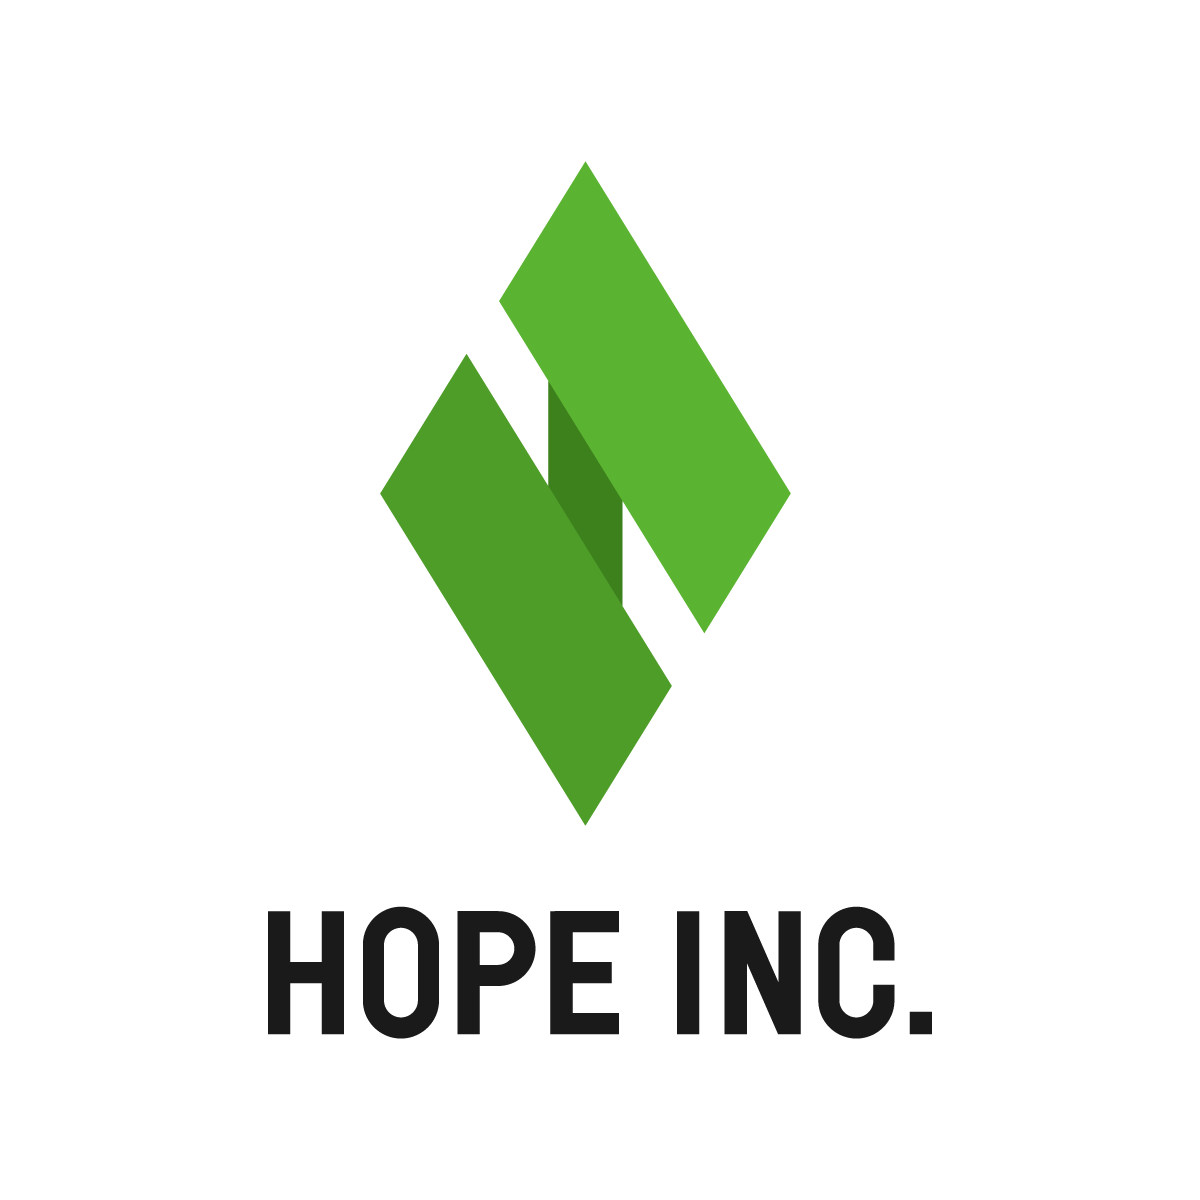 株式会社ホープのロゴマーク